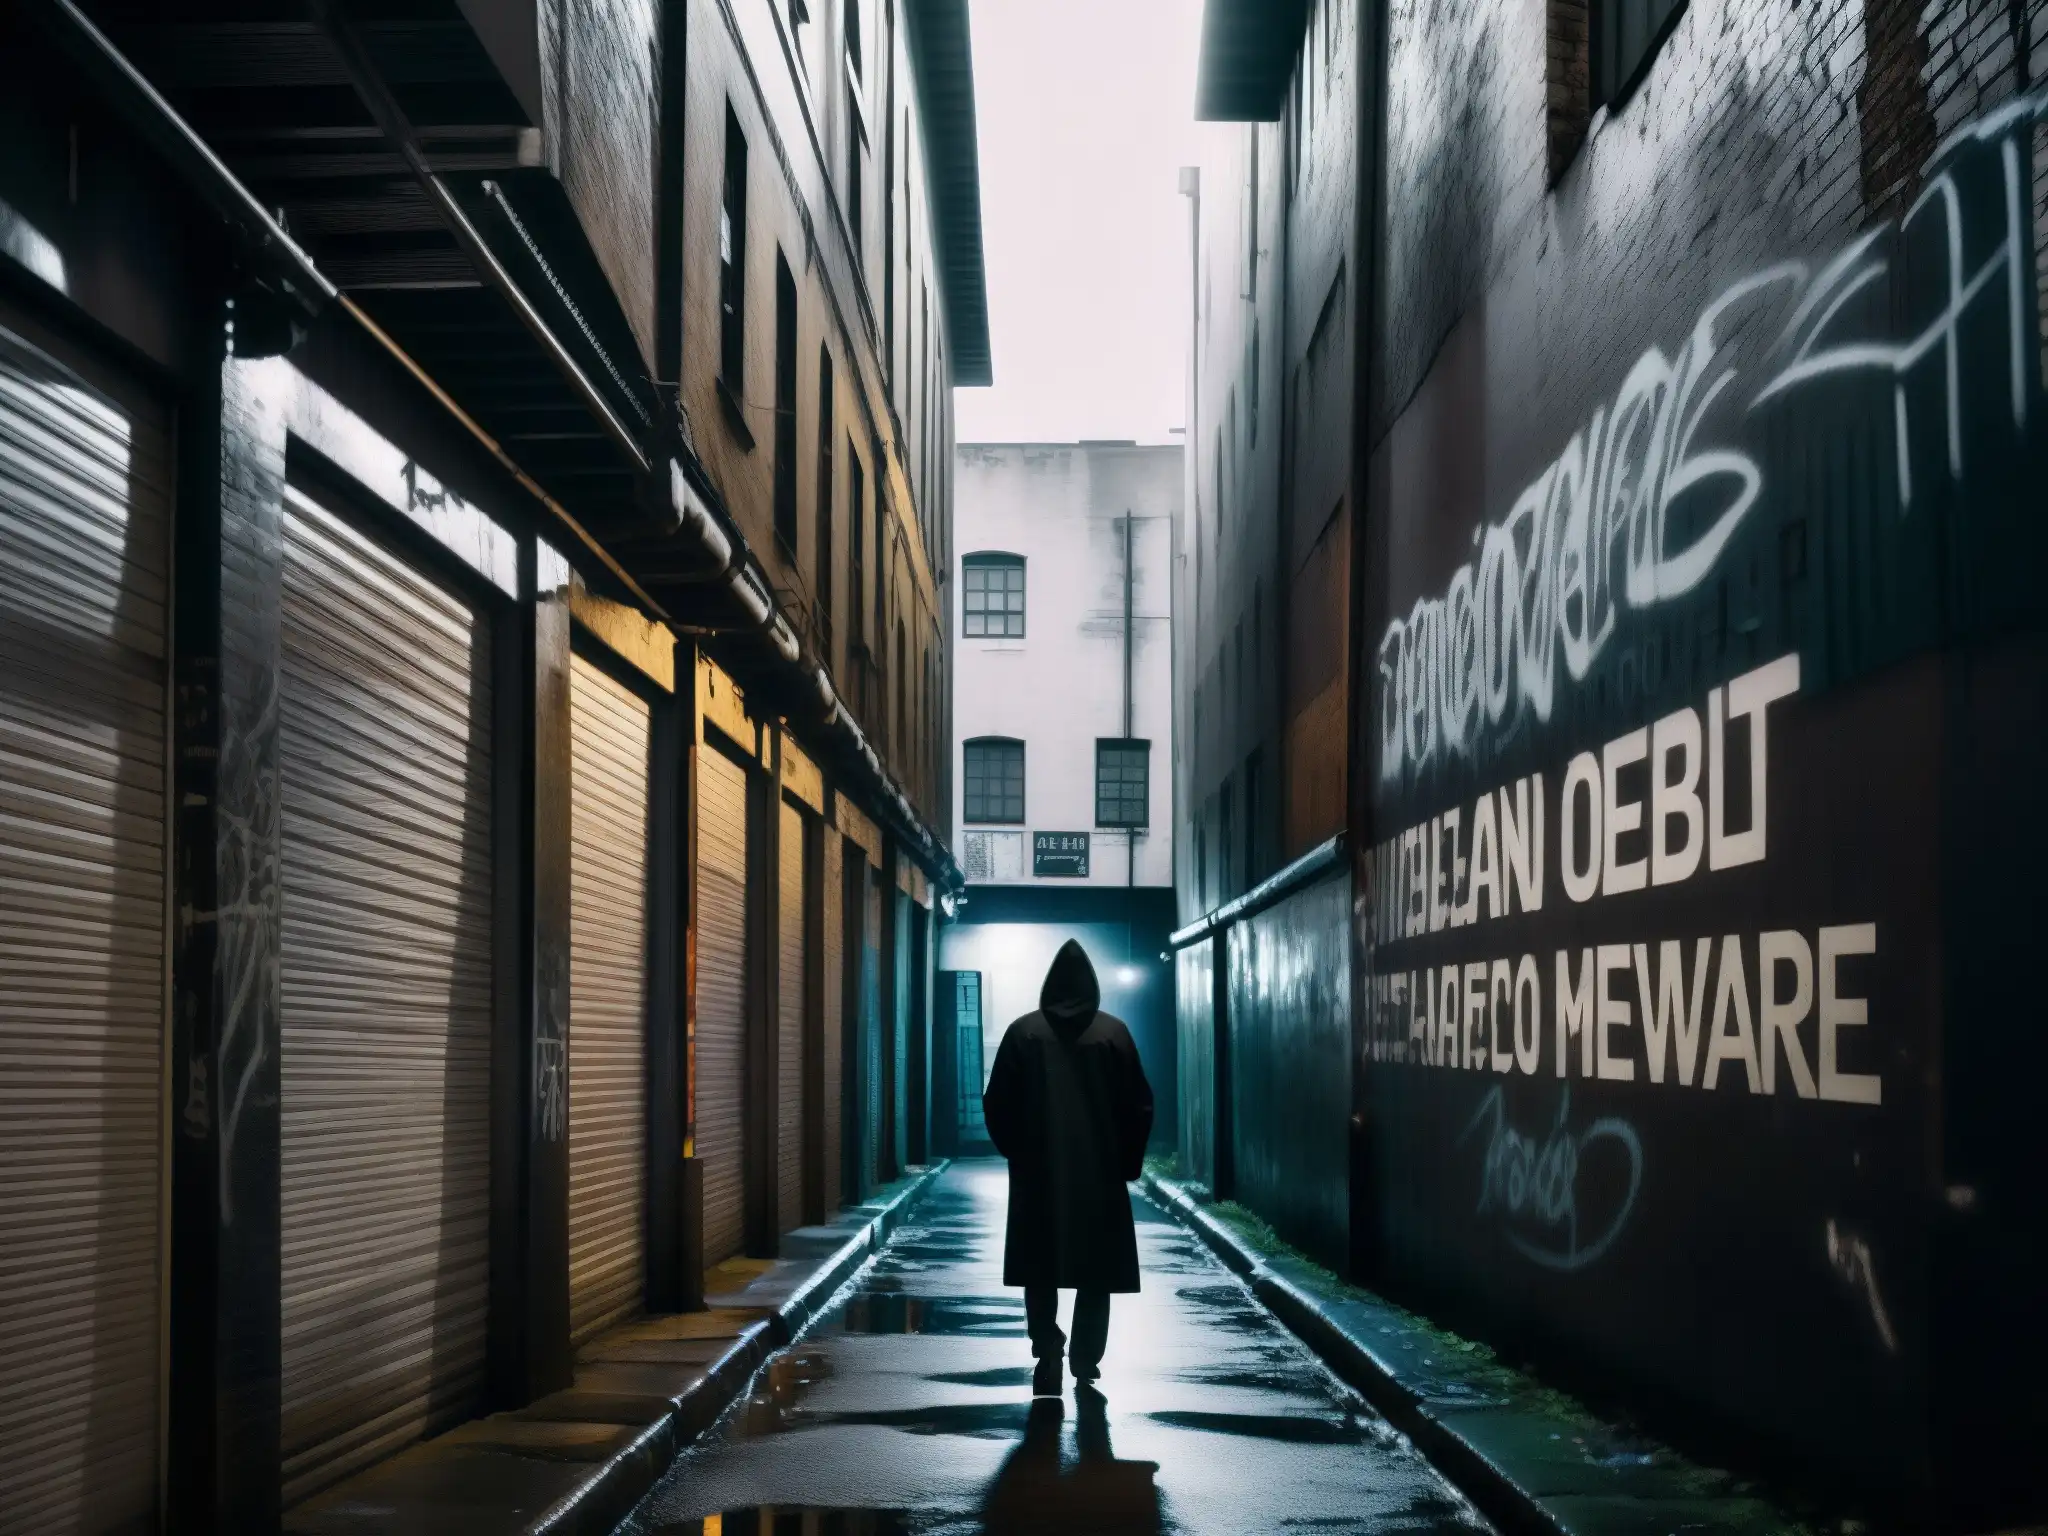 Foto en blanco y negro de un callejón urbano con grafitis, una figura solitaria en sombras